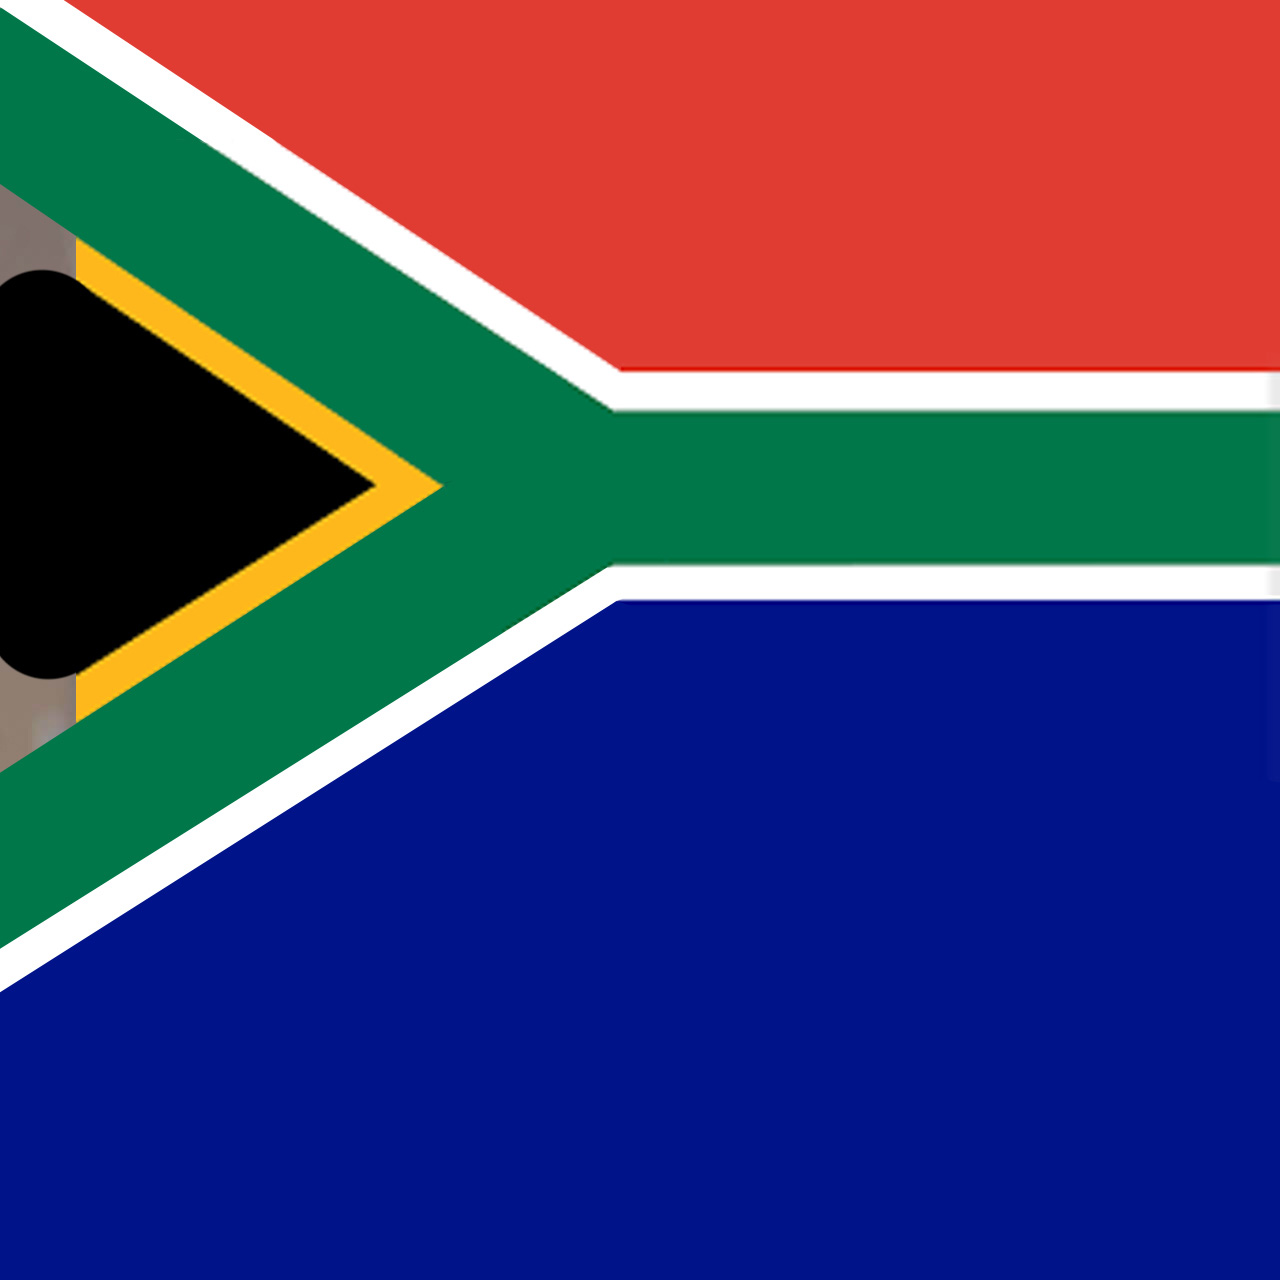 https://neelikon.co.uk/wp-content/uploads/2022/01/Testimonial-South-Africa.jpg